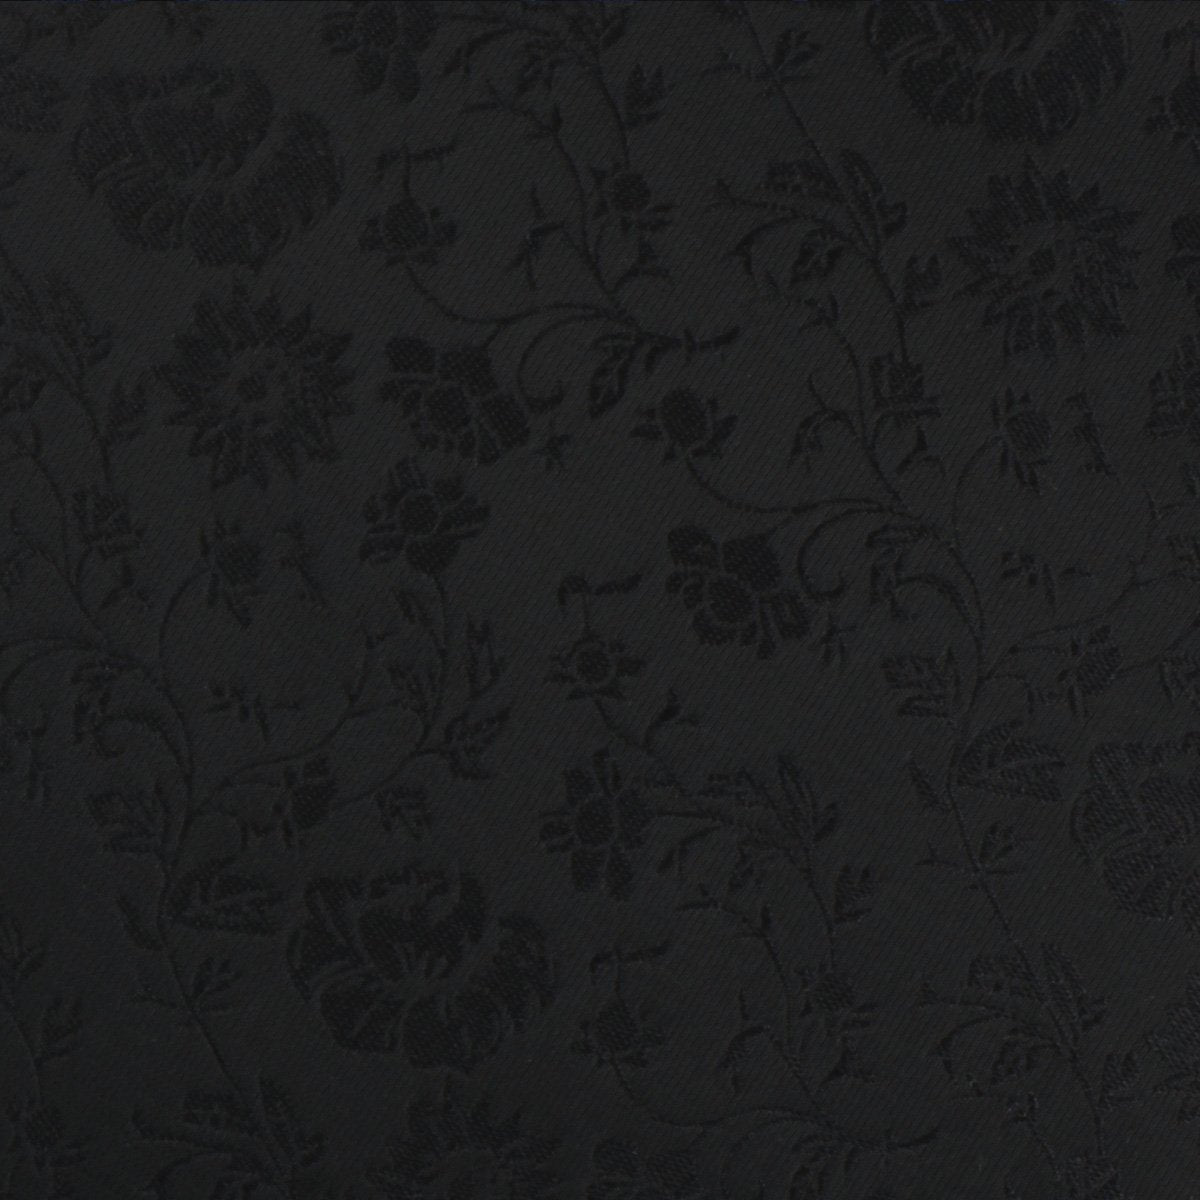 Midnight Black Floral Necktie Fabric